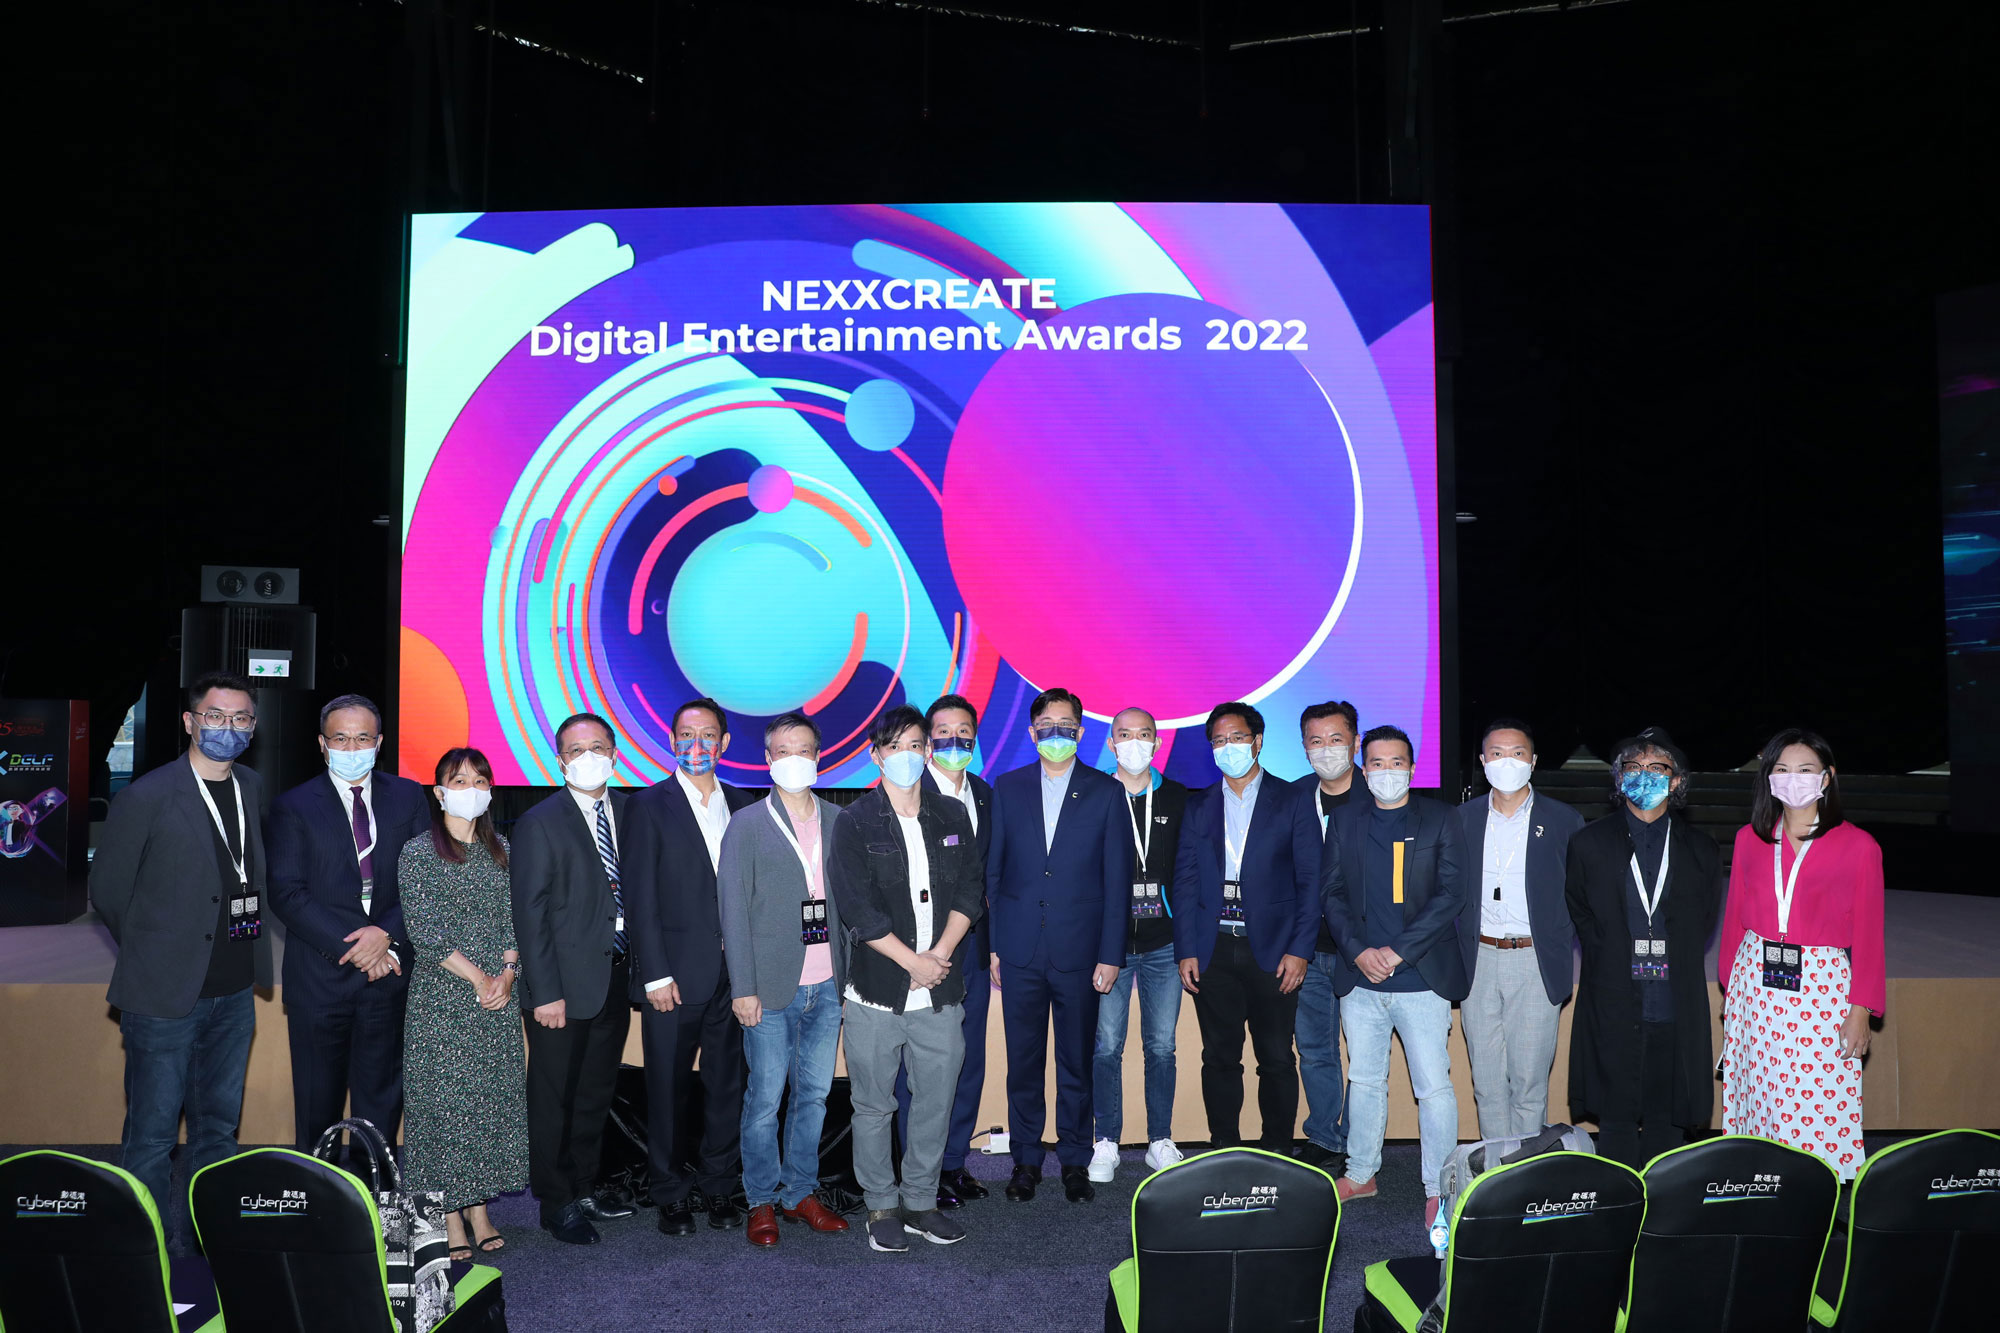 副政府資訊科技總監(署任)黃敬文先生（左四）及Network of EdTech Hong Kong (NEXX)主席嚴偉文先生（左七）於「NEXXCREATE 數碼娛樂大獎2022頒獎典禮」與講者及嘉賓合照